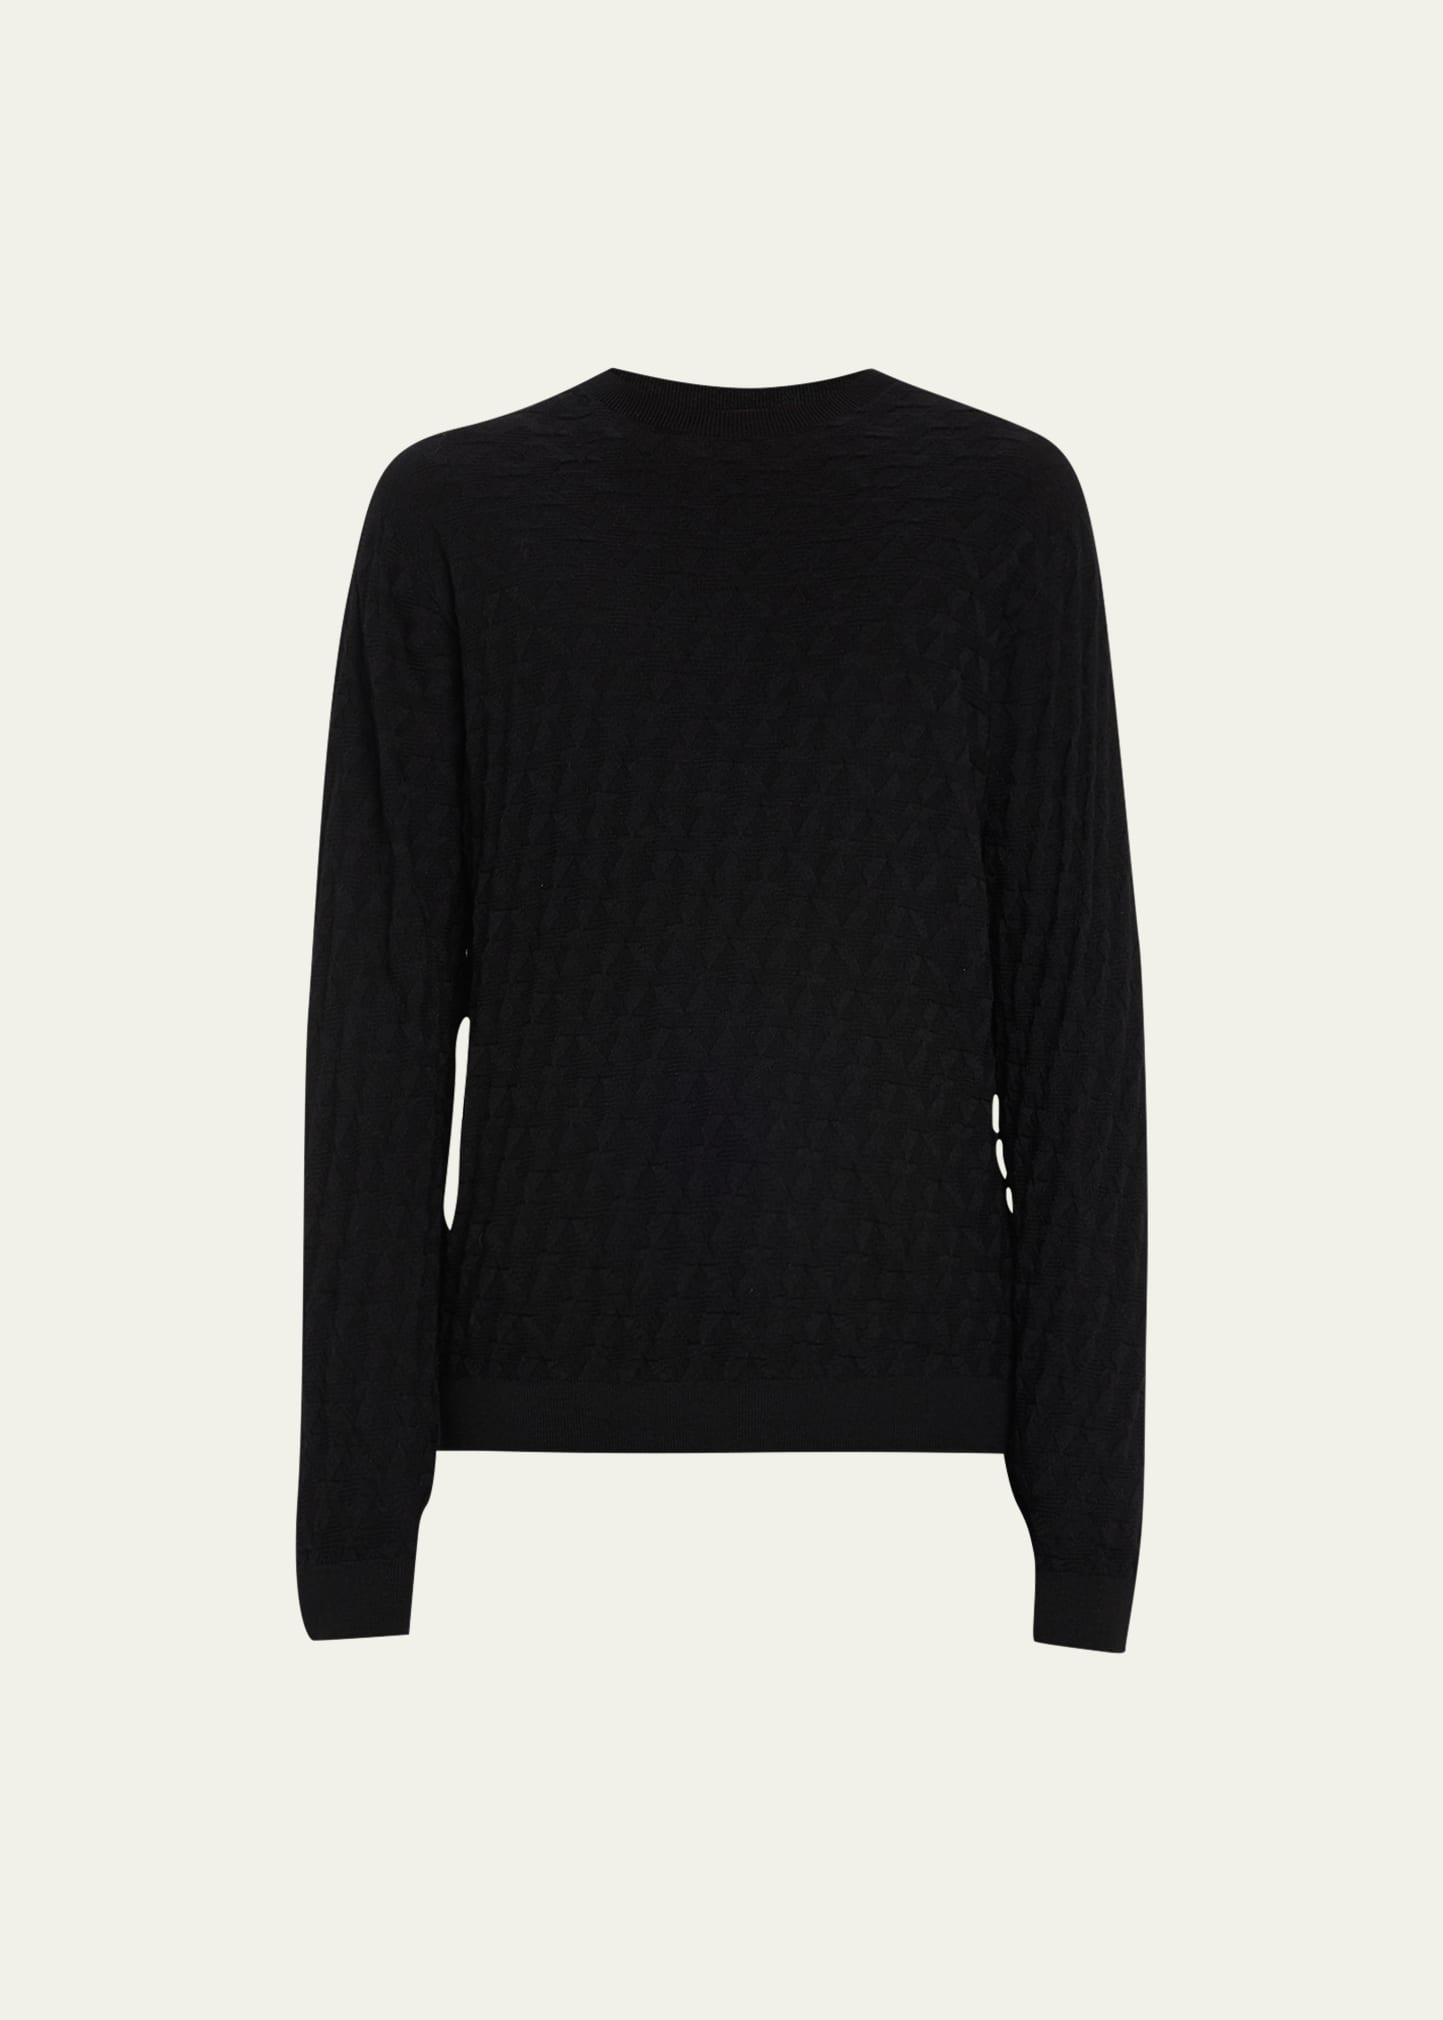 Shop Giorgio Armani Men's Knit Crewneck Sweater In Solid Black